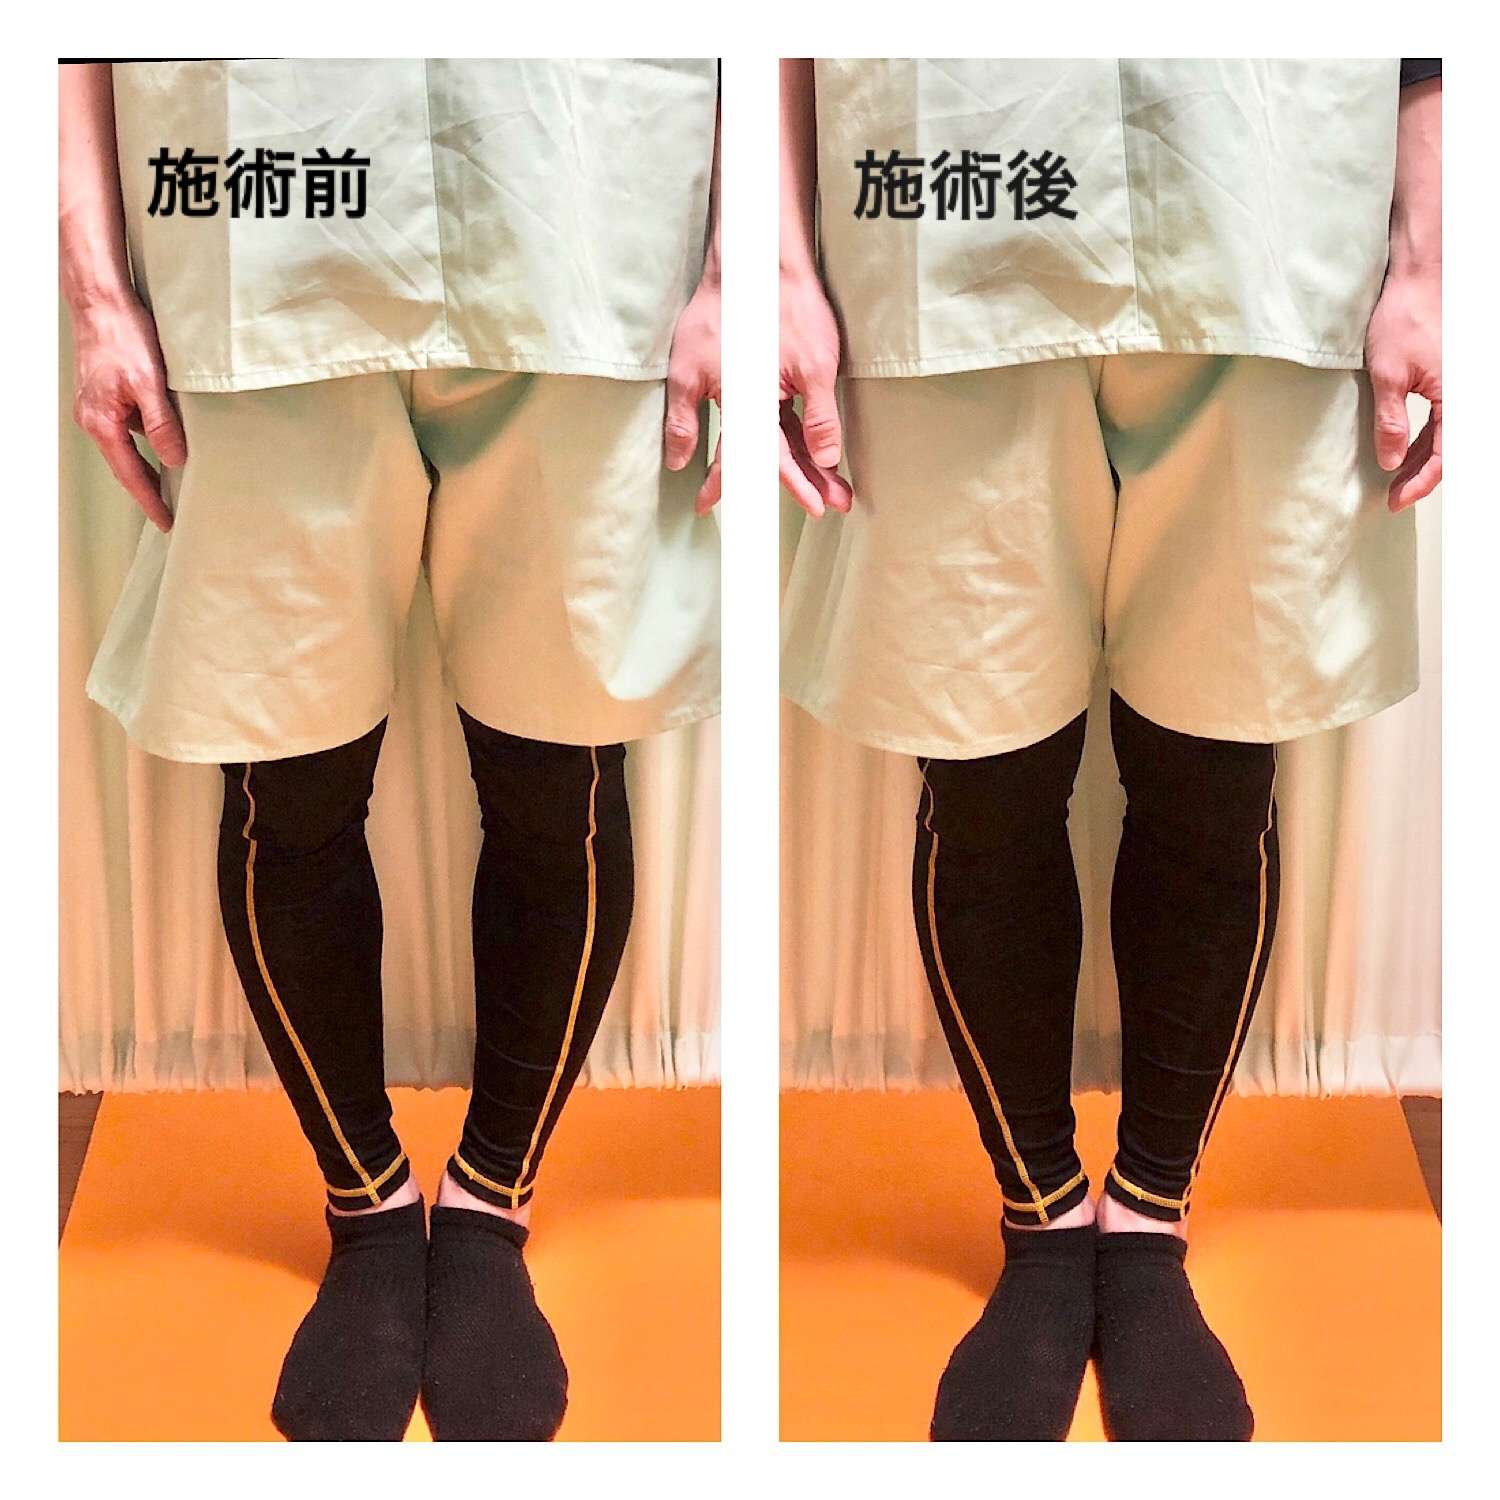 大阪市生野区内でO脚でお悩みの方、北巽の整骨院でO脚矯正をうけて綺麗な脚のラインを目指しませんか